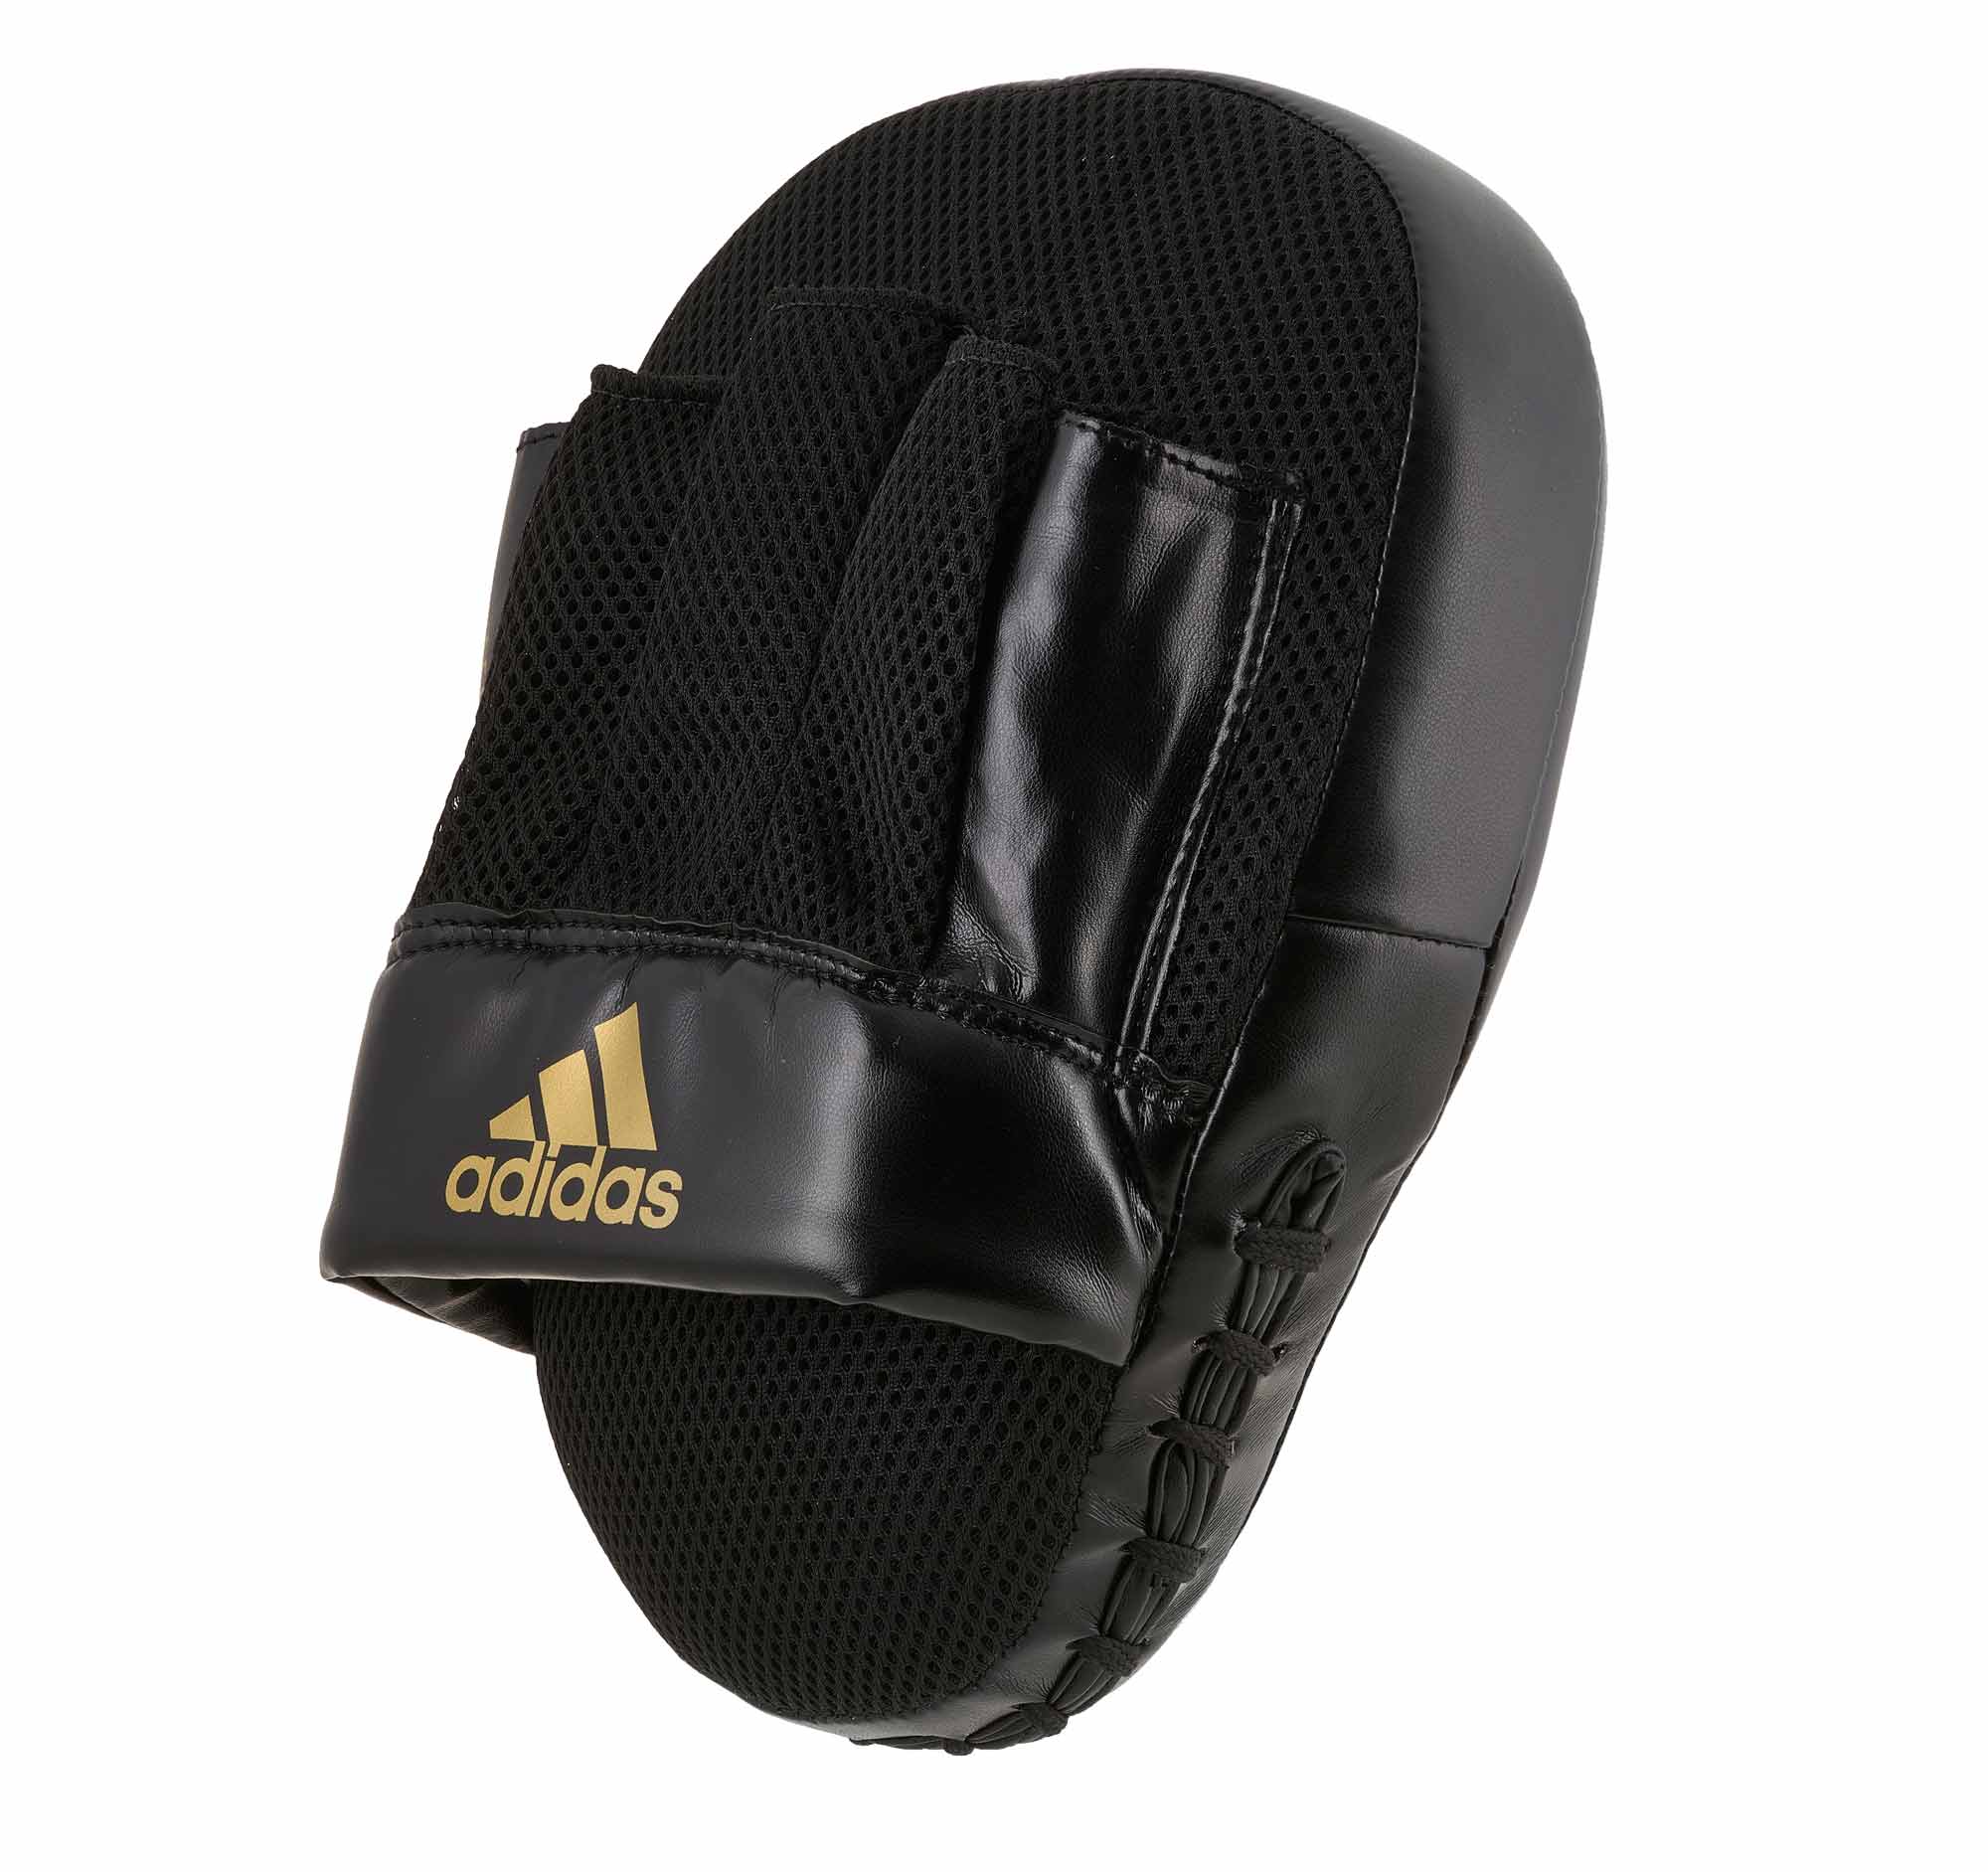 adidas Speed Coach Paar-Pratzen, schwarz/gold ADISBAC014